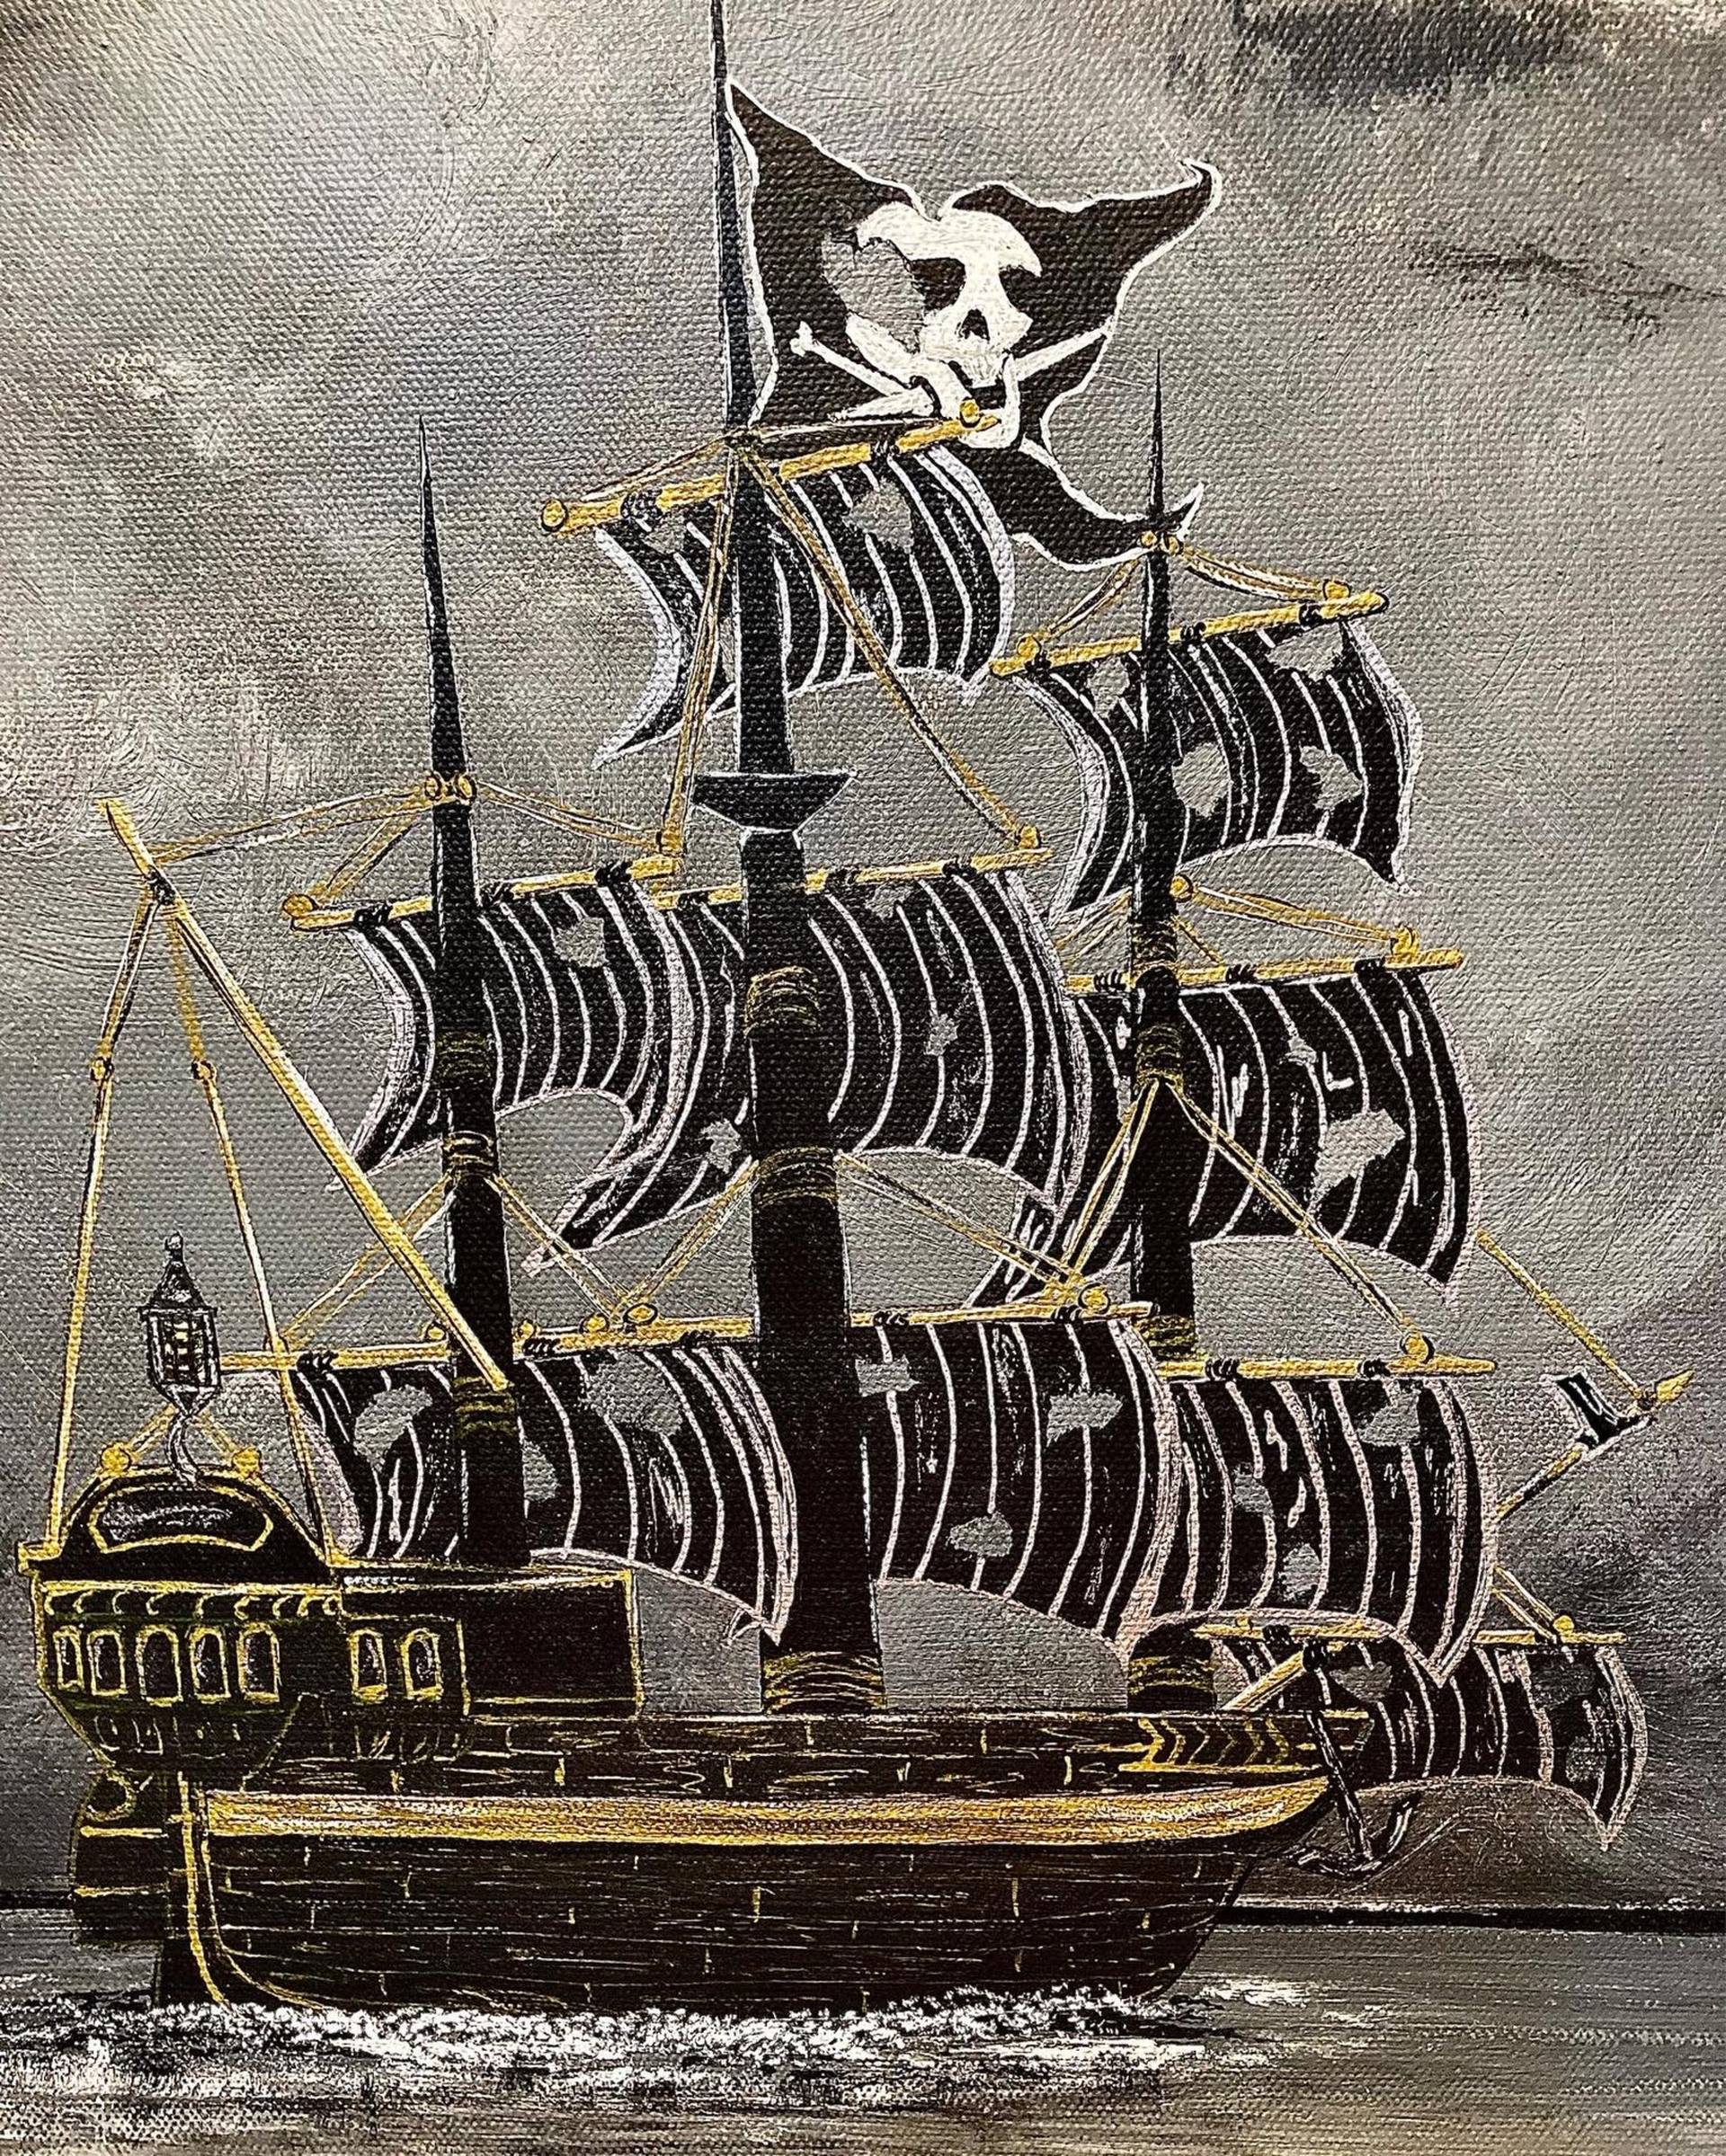 black pearl pirate ship drawings